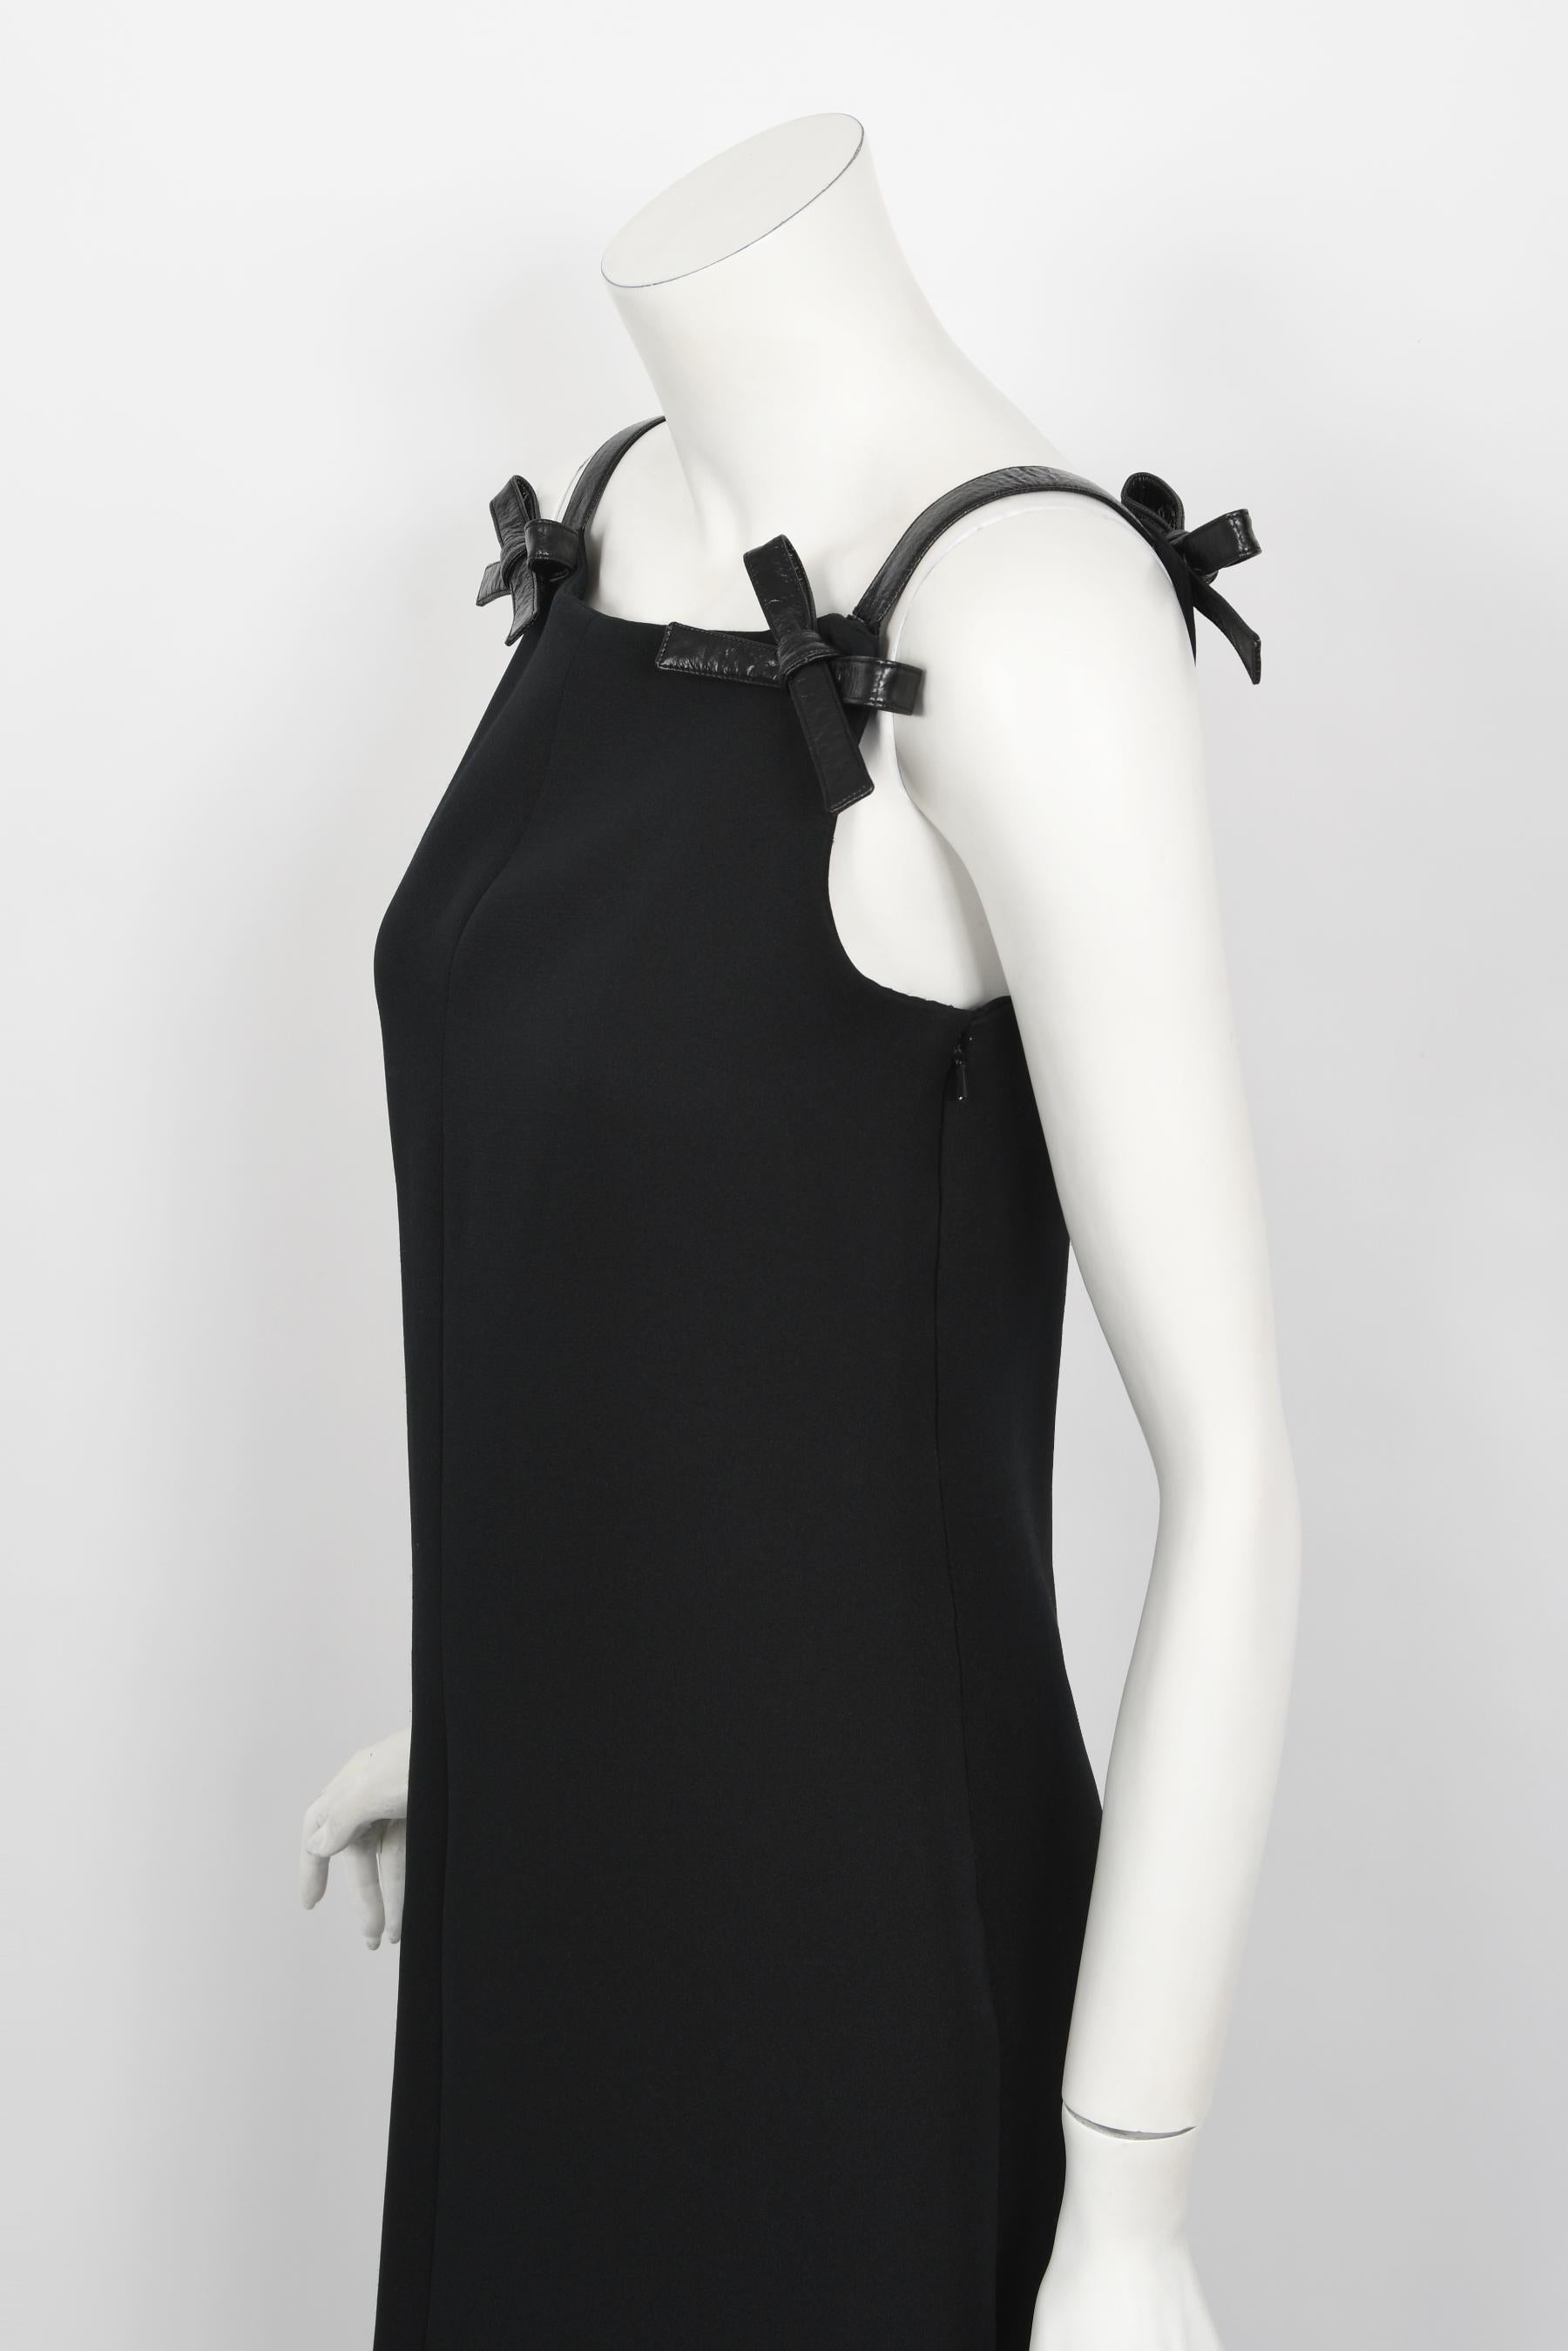 Women's Vintage 1960's André Courrèges Black Vinyl-Bows Minimalist Space-Age Mod Gown For Sale